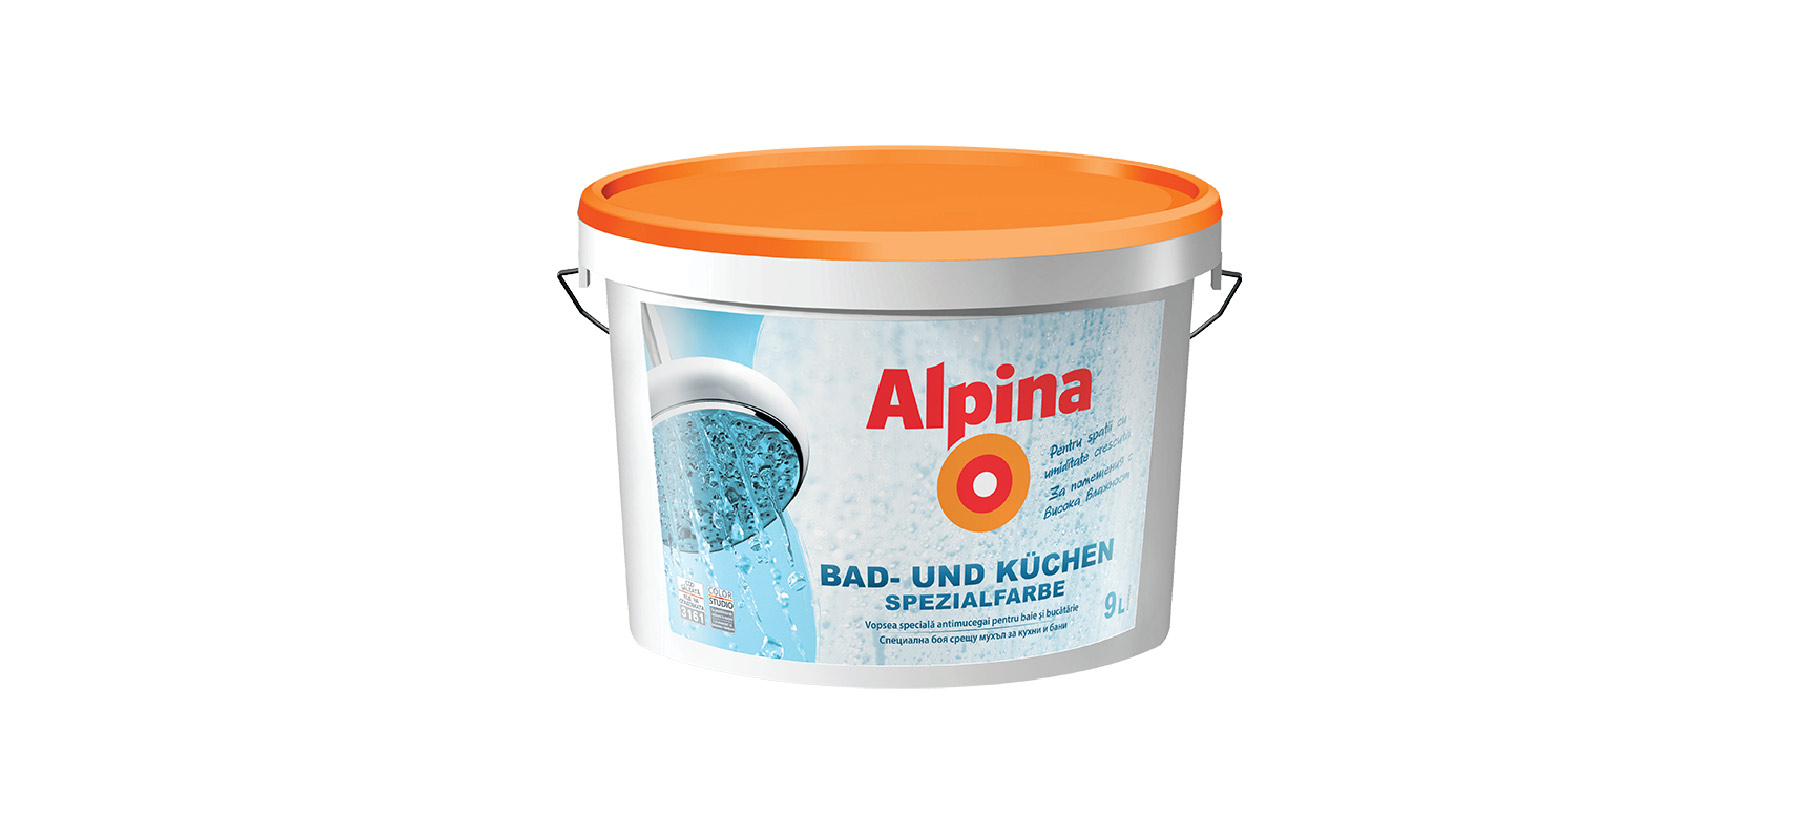 Alpina Bad- und Küchen Spezialfarbe